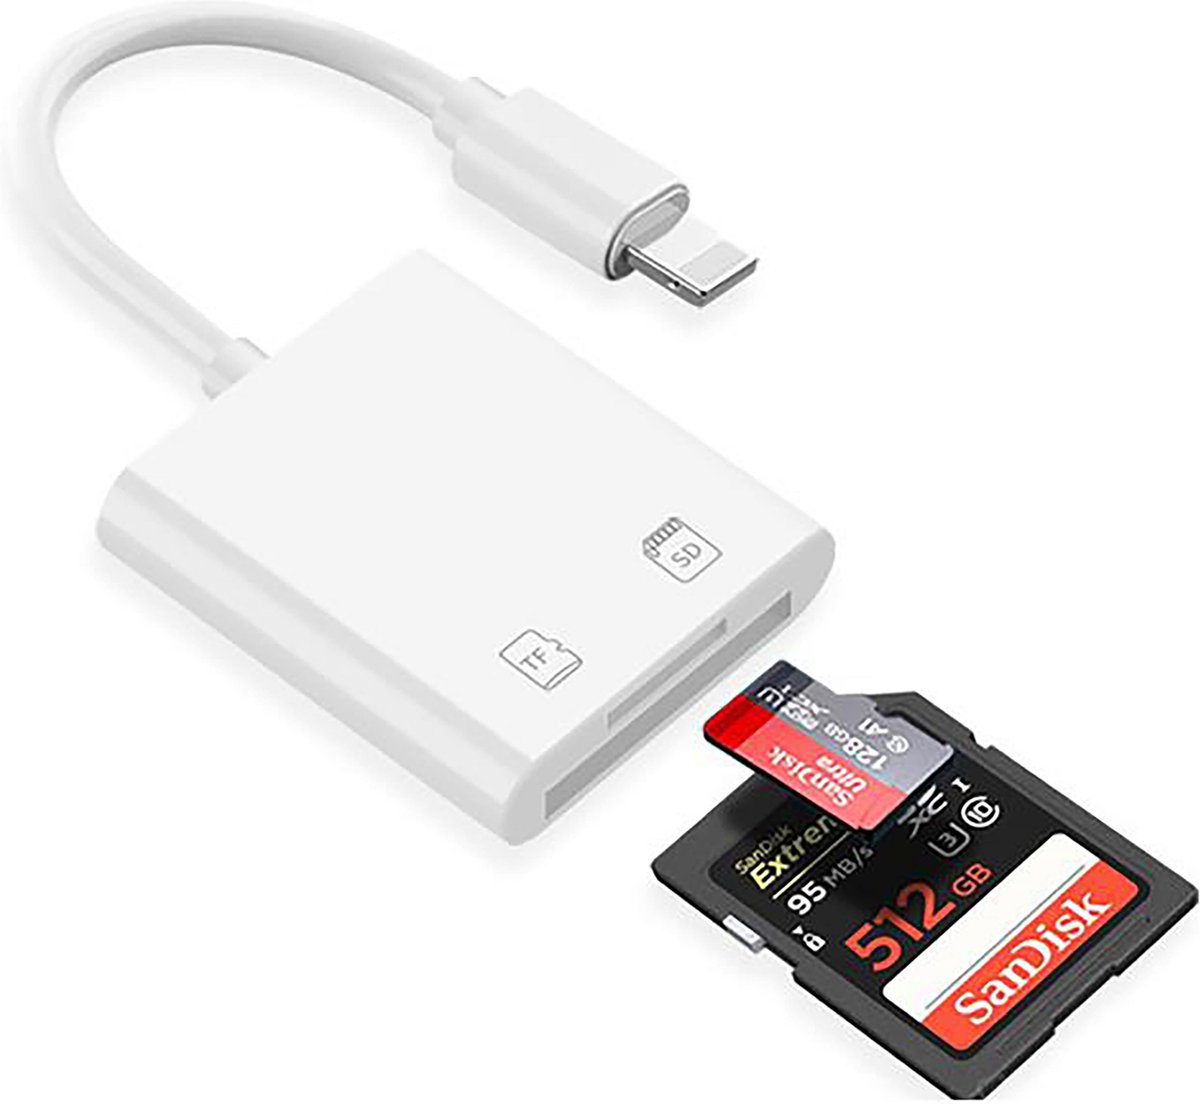 De Beste Gadgets Cardreader met Lightning aansluiting - SD-kaart en Micro SD - geschikt voor iPhone en iPad - Camara connection kit - Lightning SD Card Reader - Geheugen kaartlezer met Lightning aansluiting - De Beste Gadgets